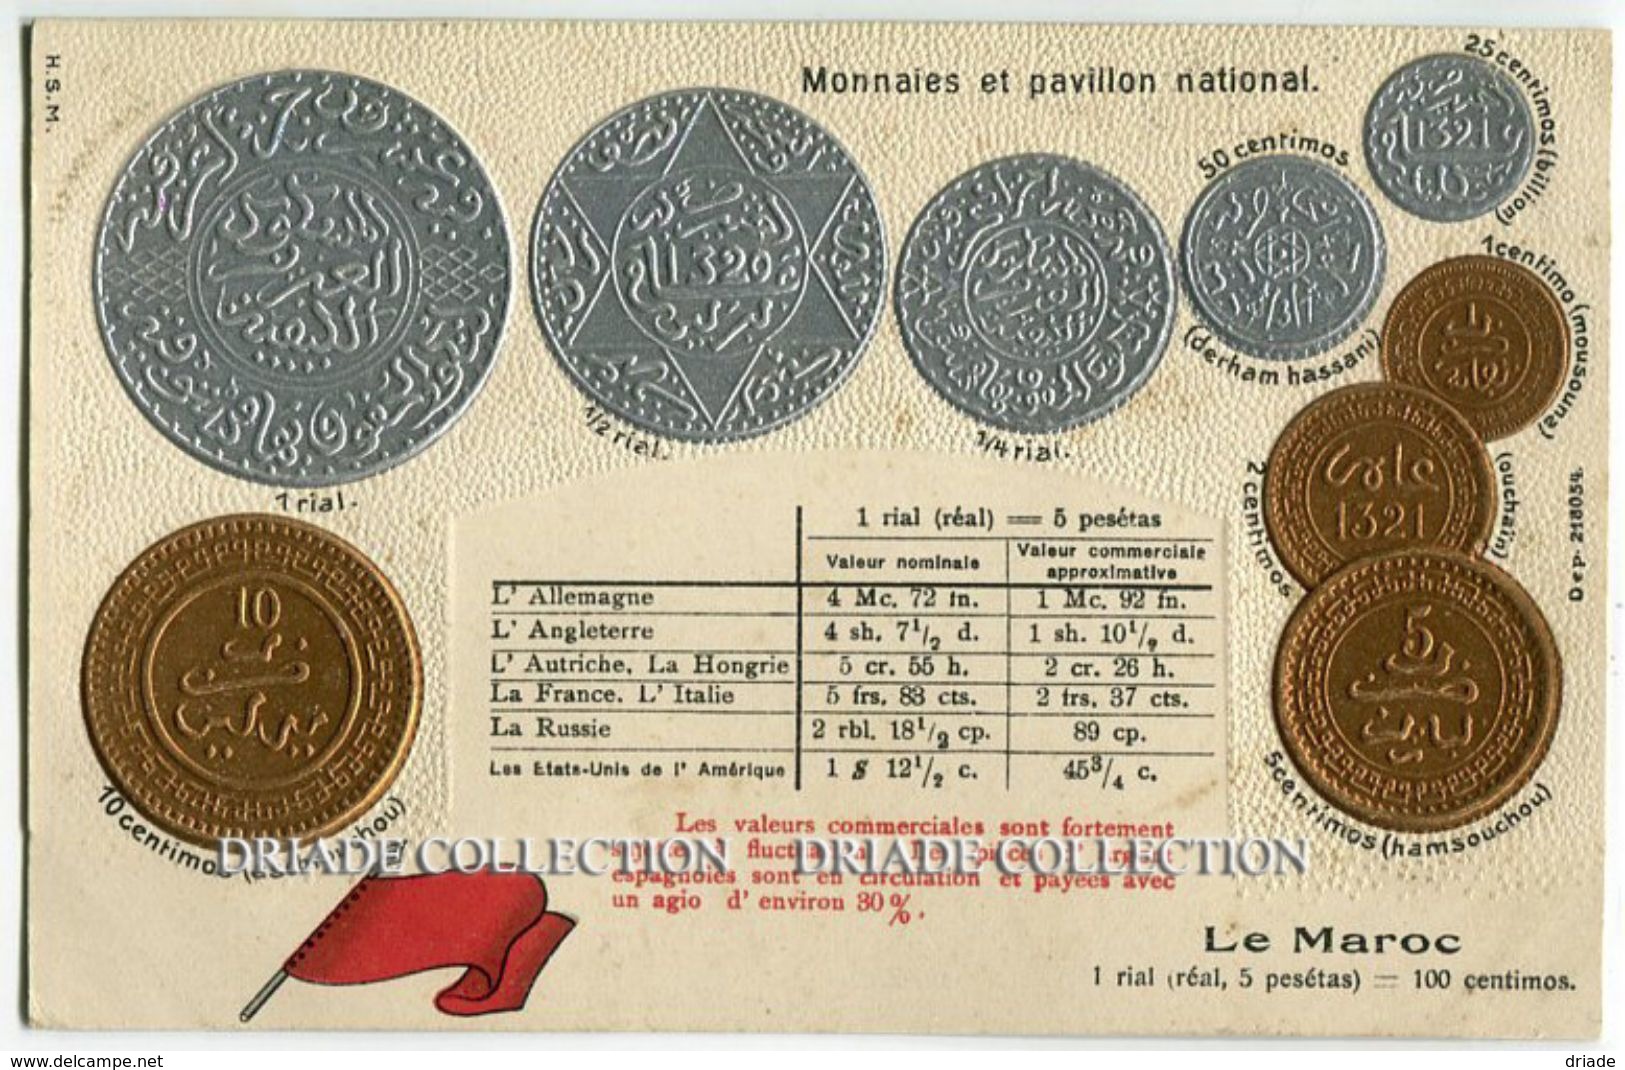 CARTOLINA CON RAPPRESENTAZIONE A RILIEVO MONETE PAVILLON NATIONAL MONNAIES LE MAROC RIAL - Monete (rappresentazioni)